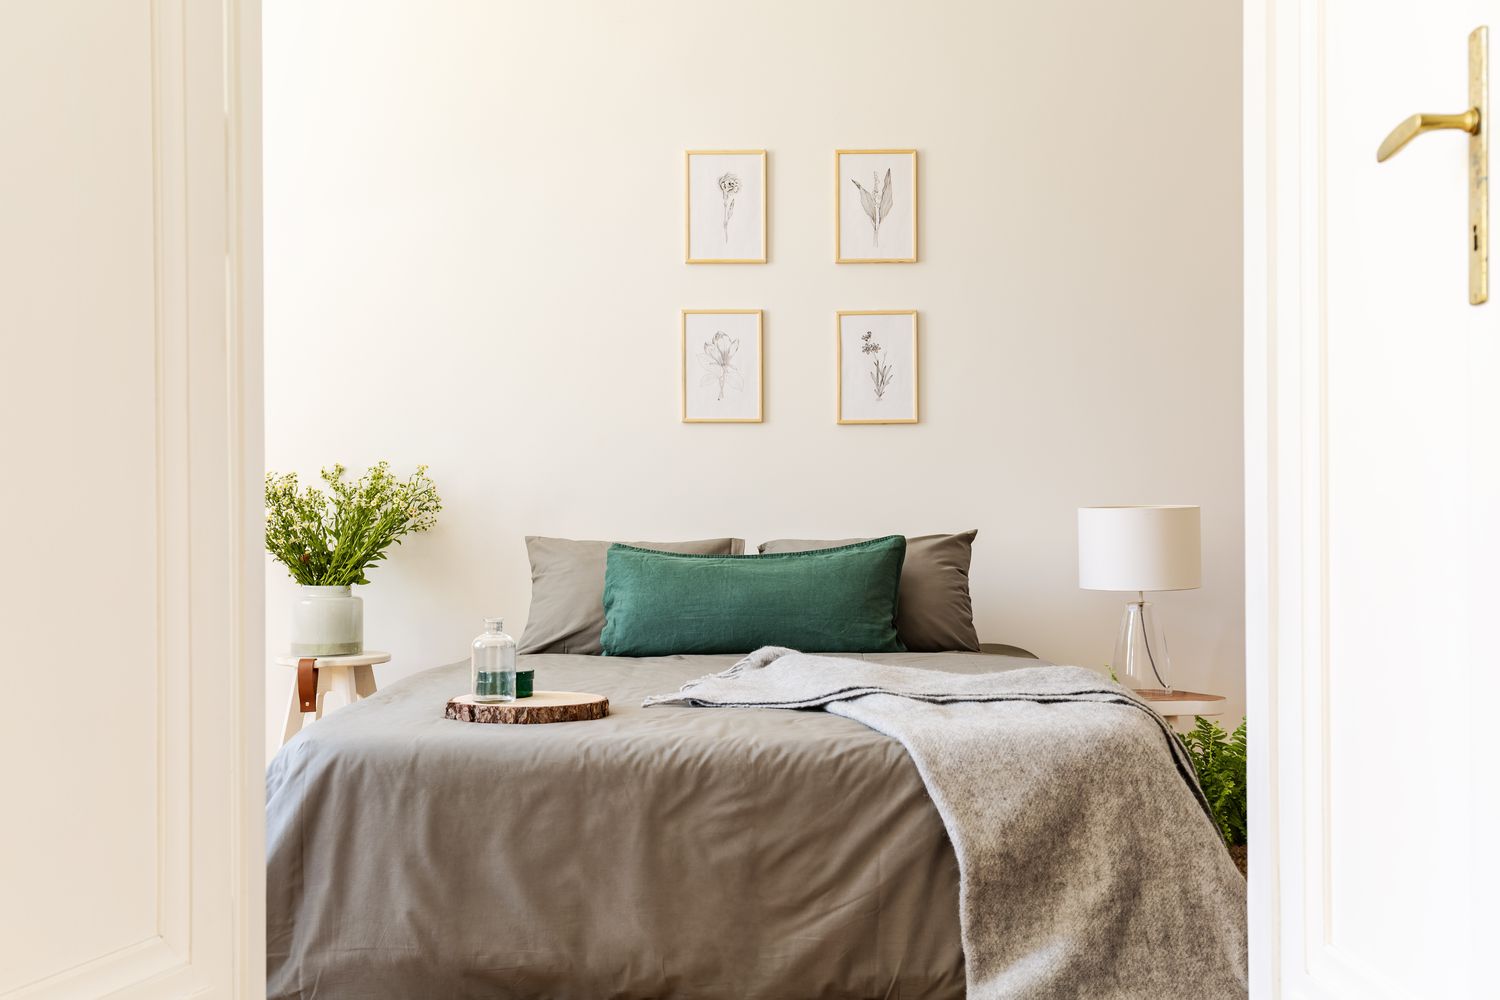 Ein Blick durch eine offene Tür in ein natürliches, sonniges Schlafzimmer mit grauen und grünen Laken und Kissen auf einem Doppelbett. Naturzeichnungen an der Vanille-Wand. Echtes Foto.